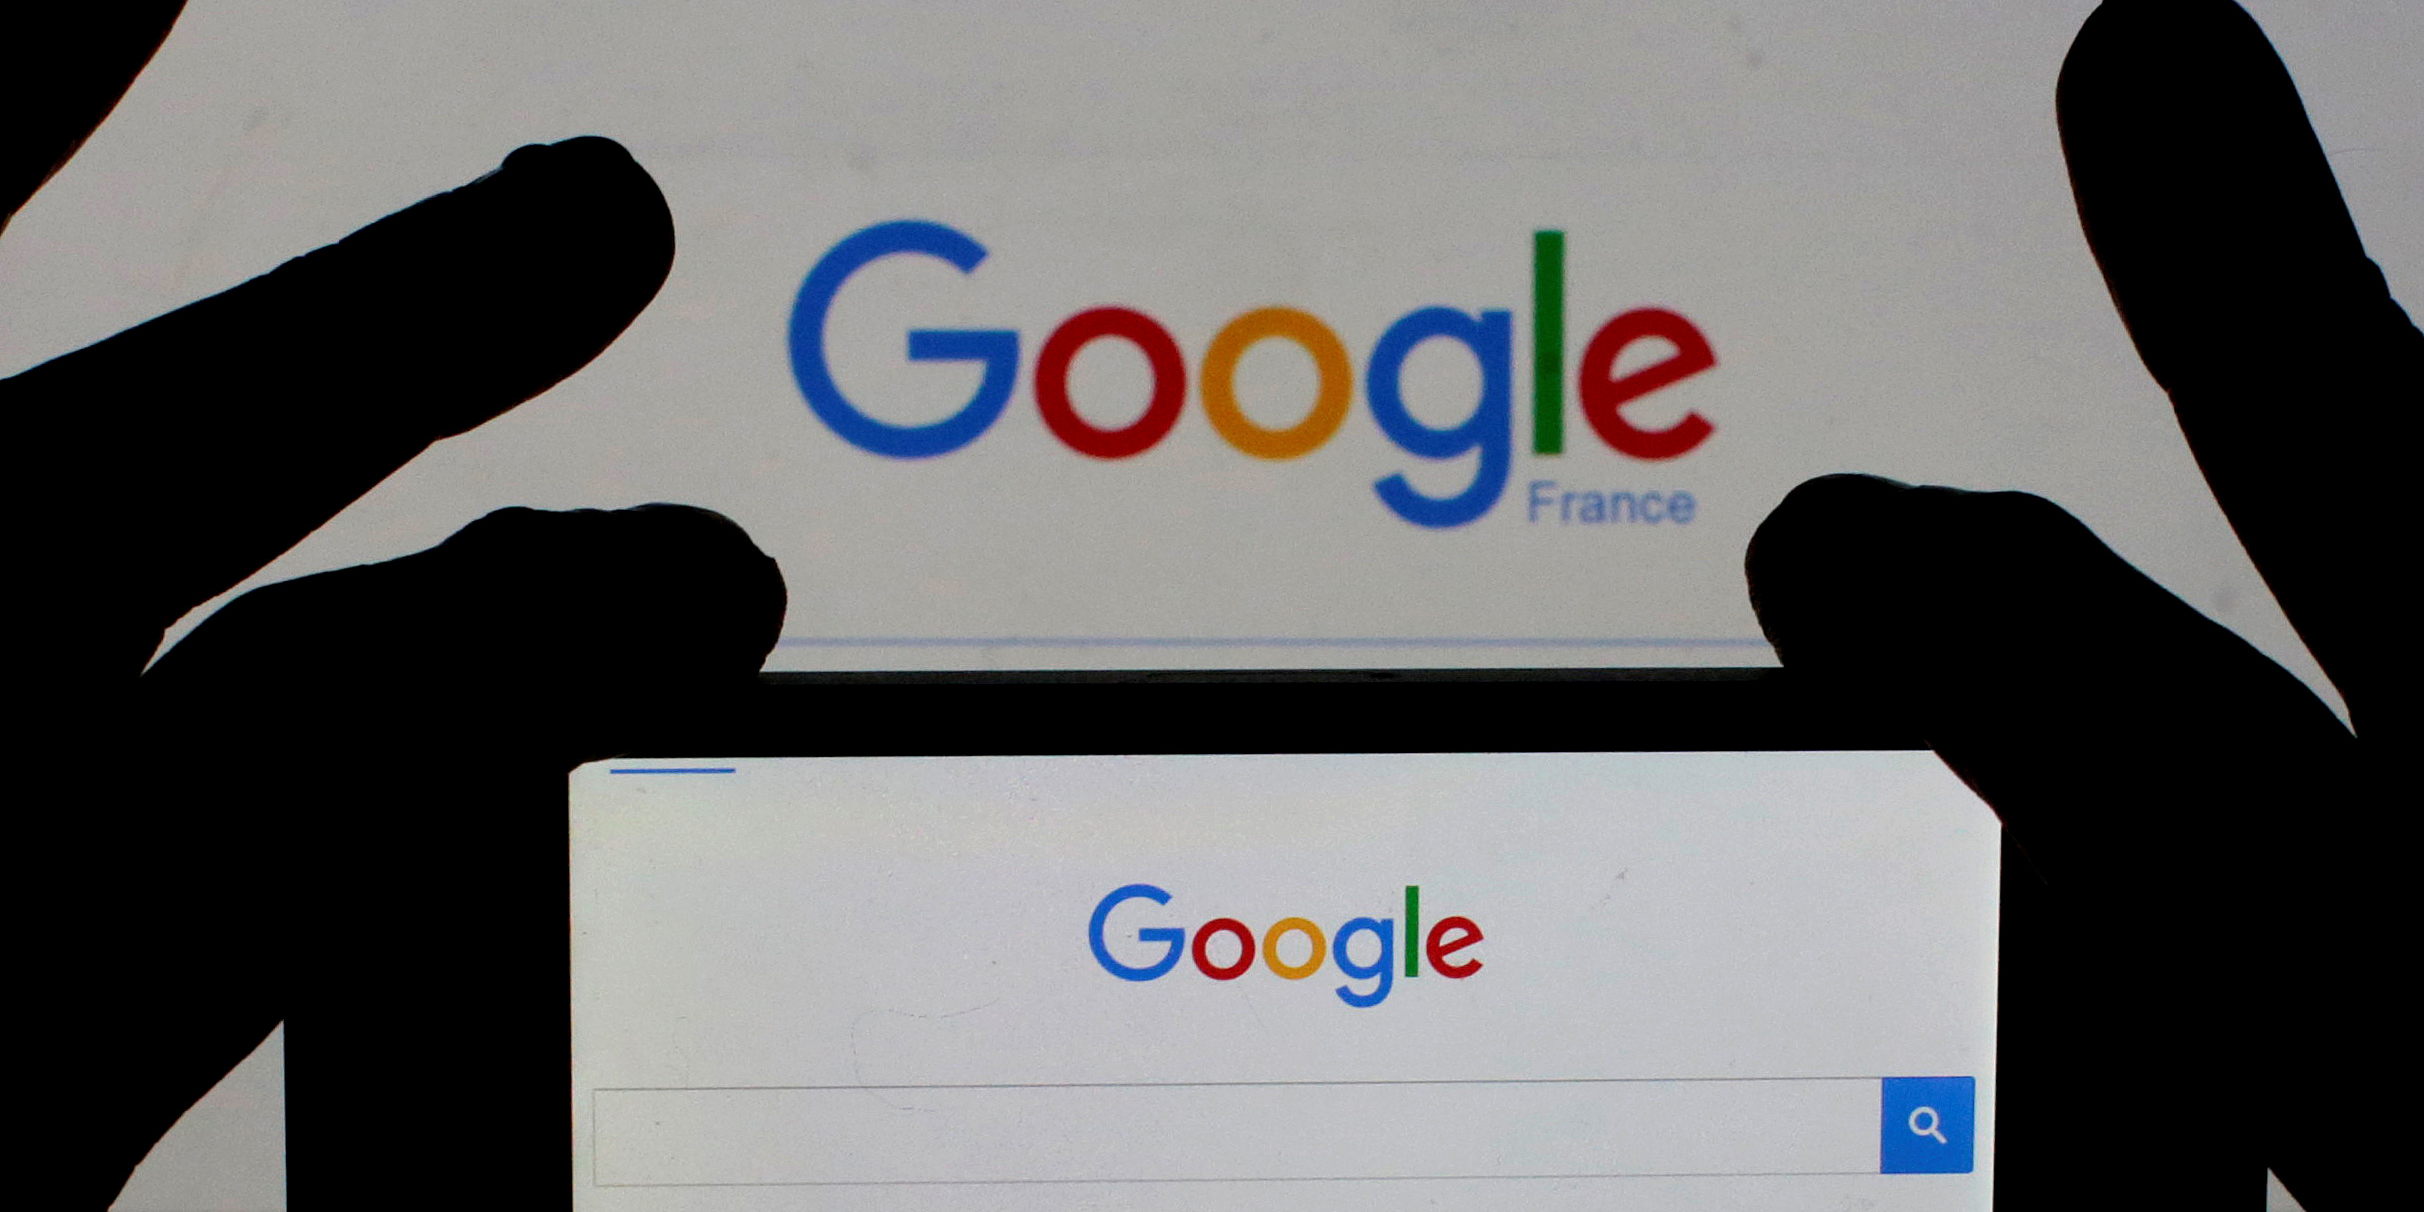 Droits voisins: la presse française signe un accord de rémunération de ses contenus avec le géant Google